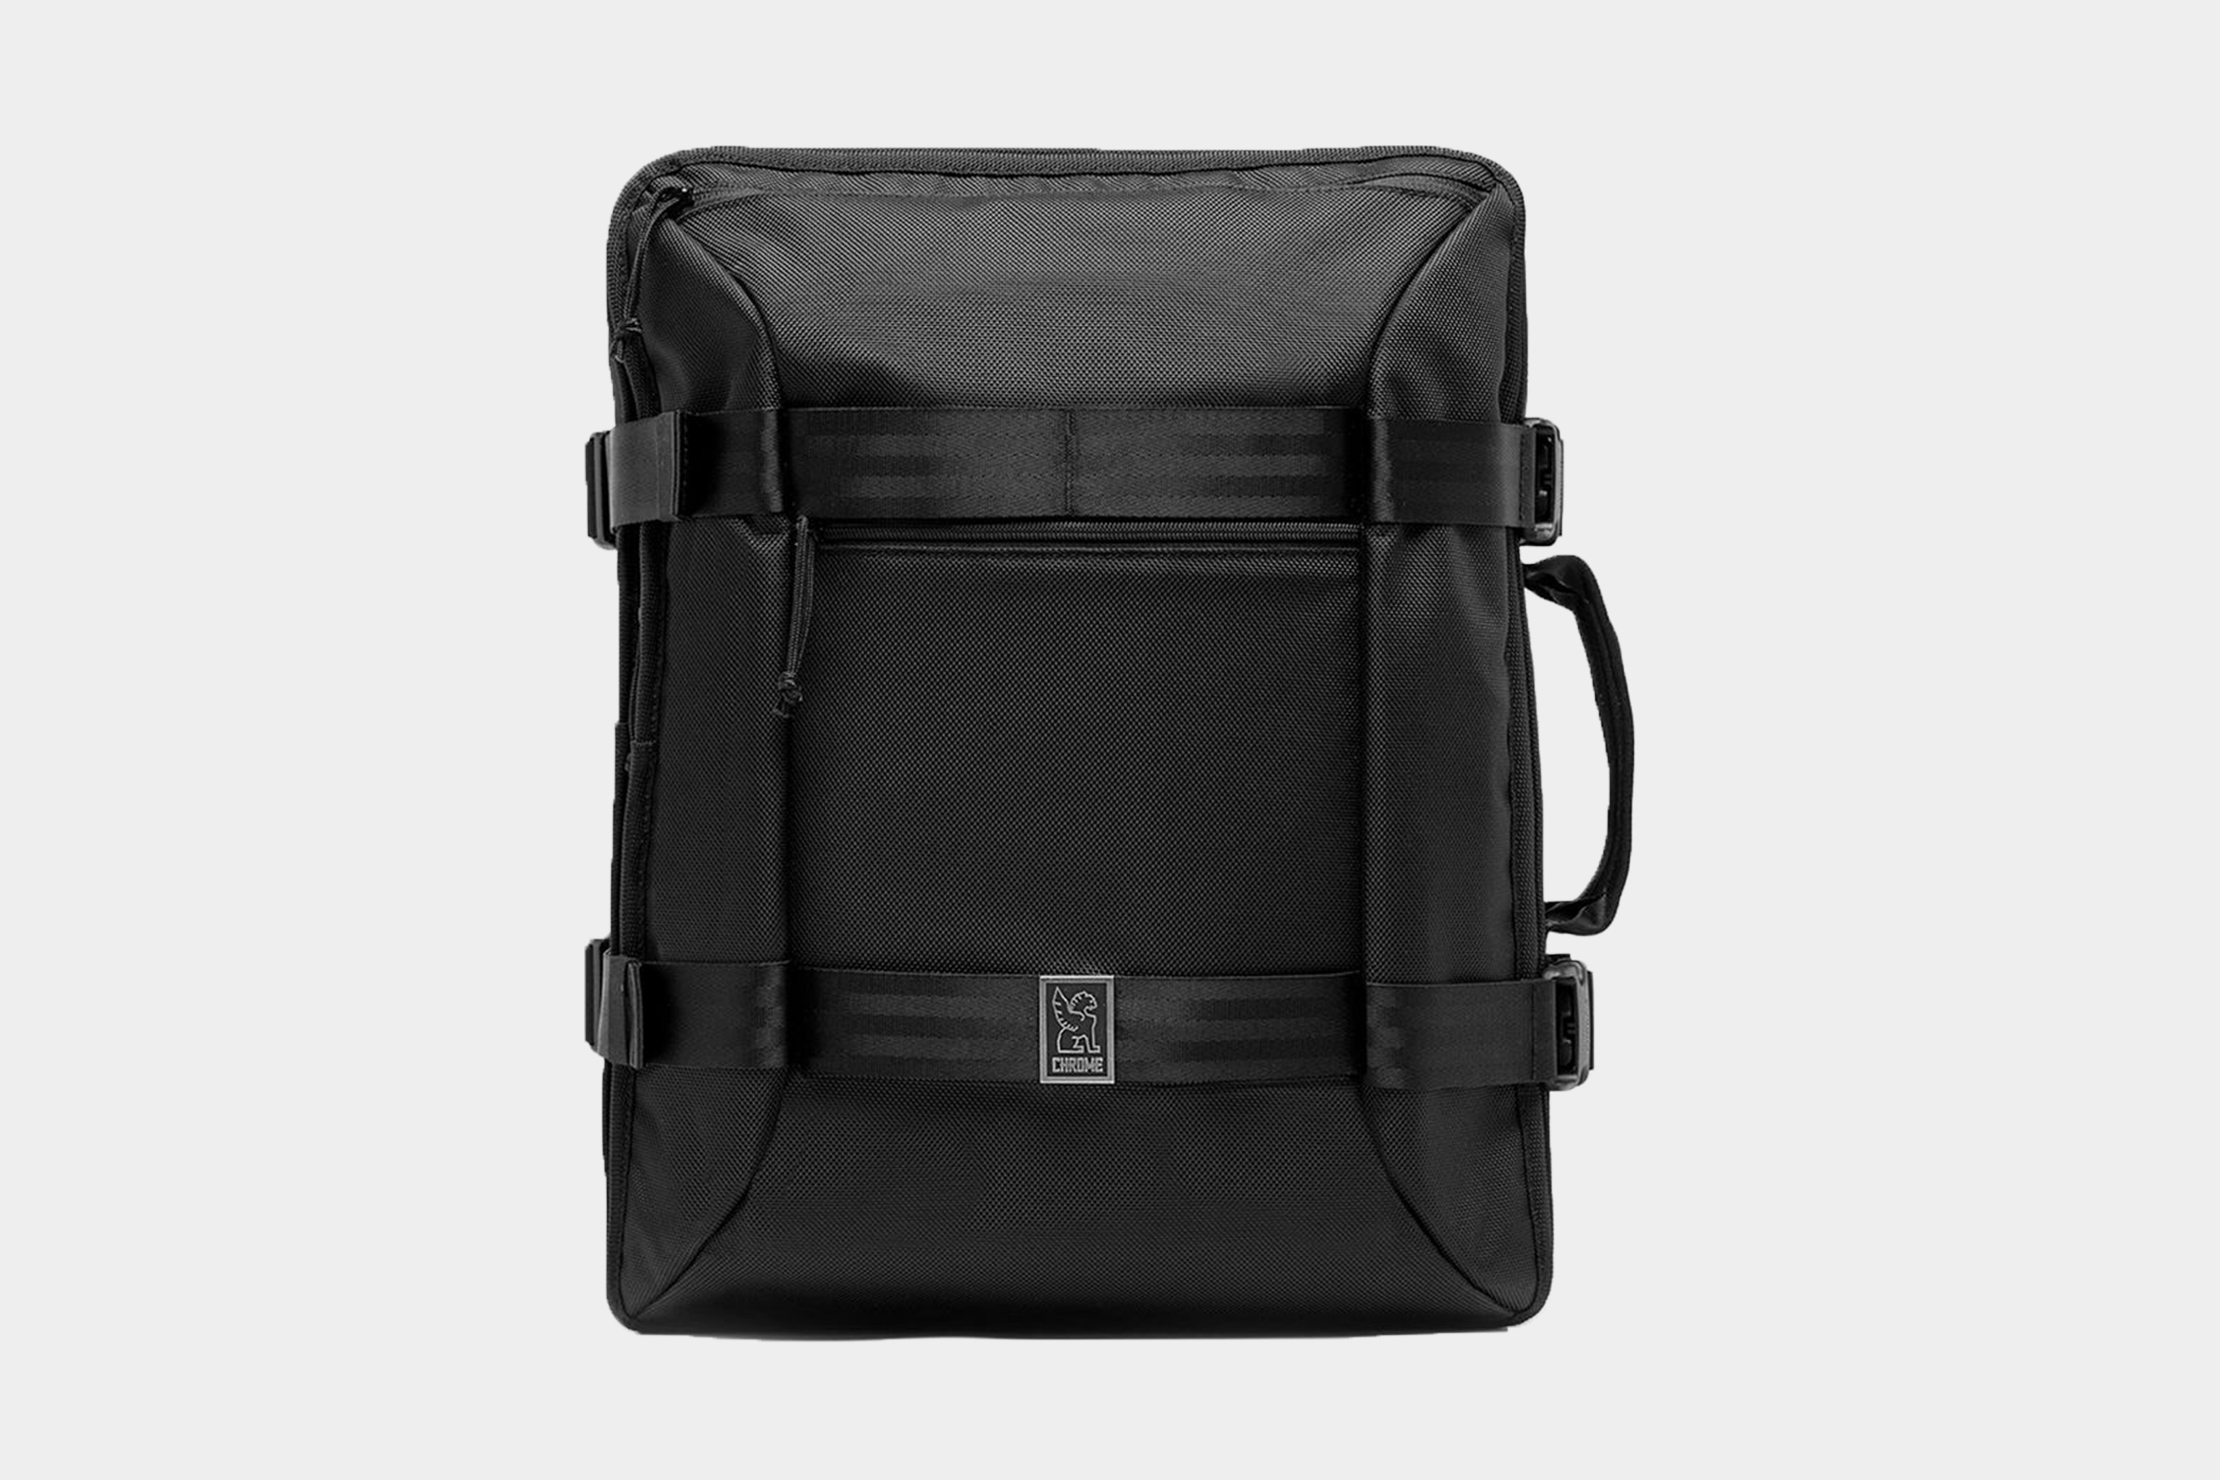 Chrome Macheto Travel Backpack Review | Pack Hacker